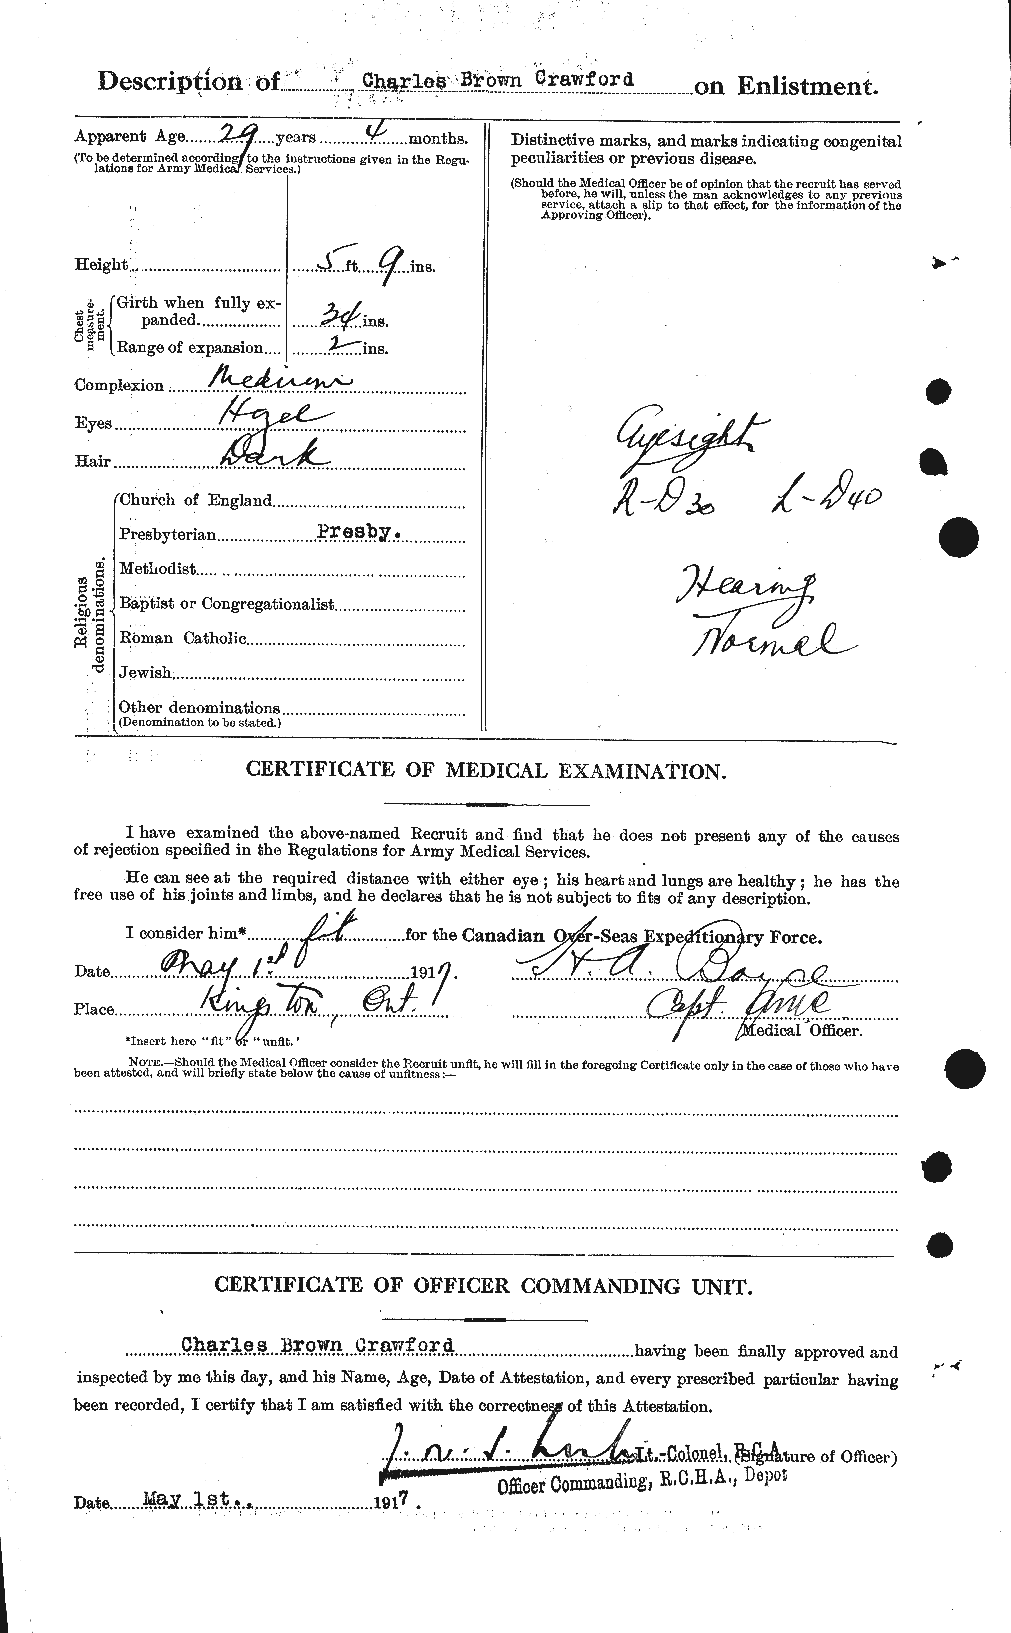 Dossiers du Personnel de la Première Guerre mondiale - CEC 060846b